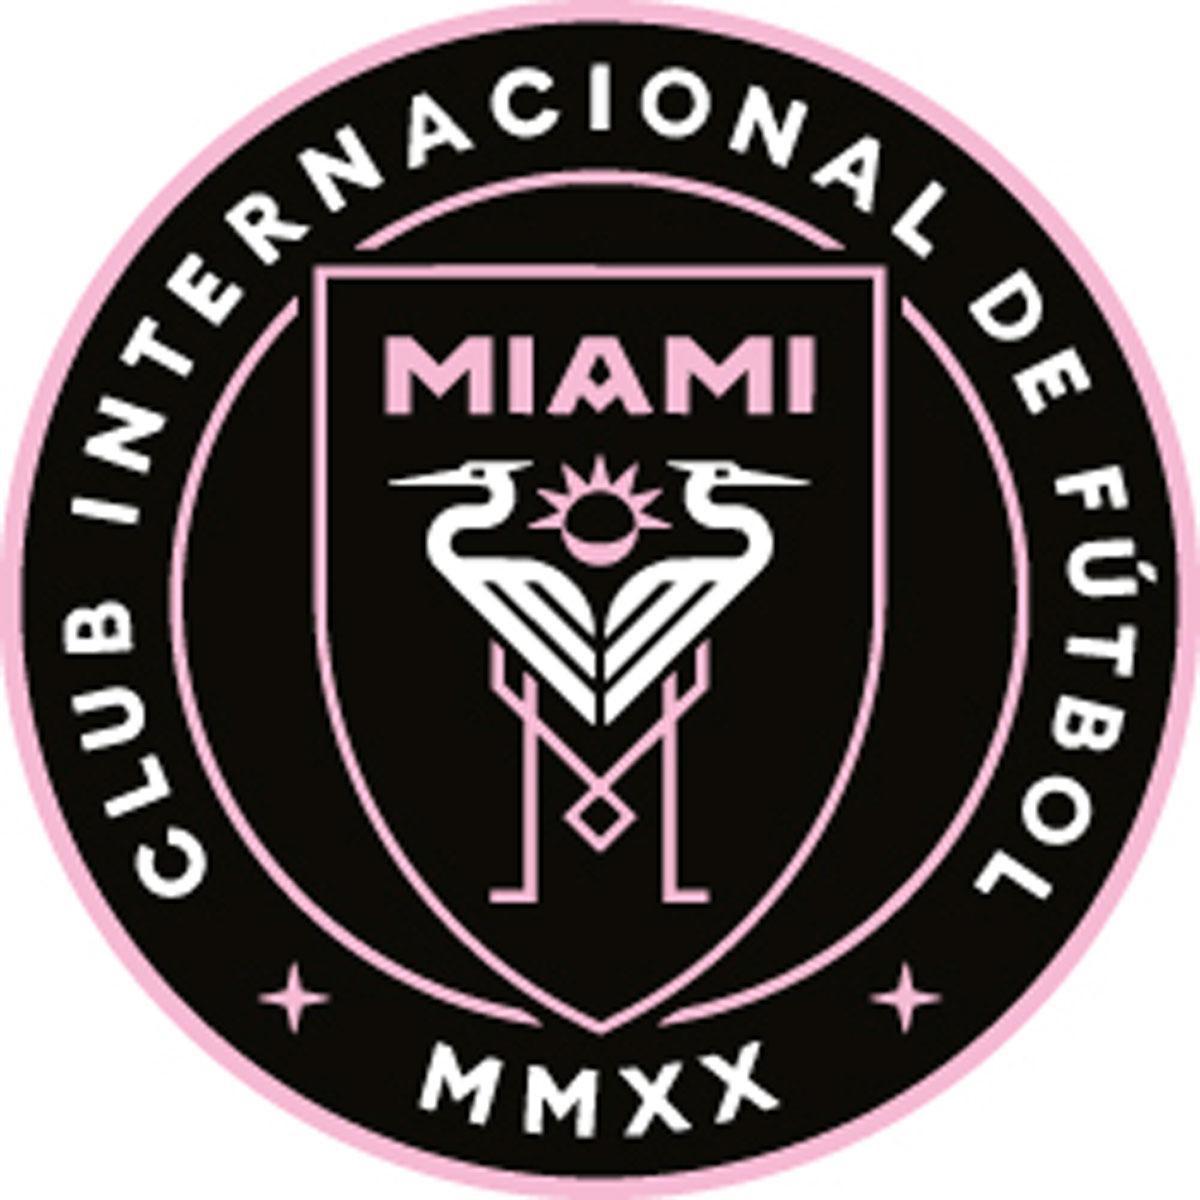 Het logo van Inter Miami. De ondergaande zon tussen de twee reigers, heeft zeven stralen, een verwijzing naar het rugnummer van Beckham.